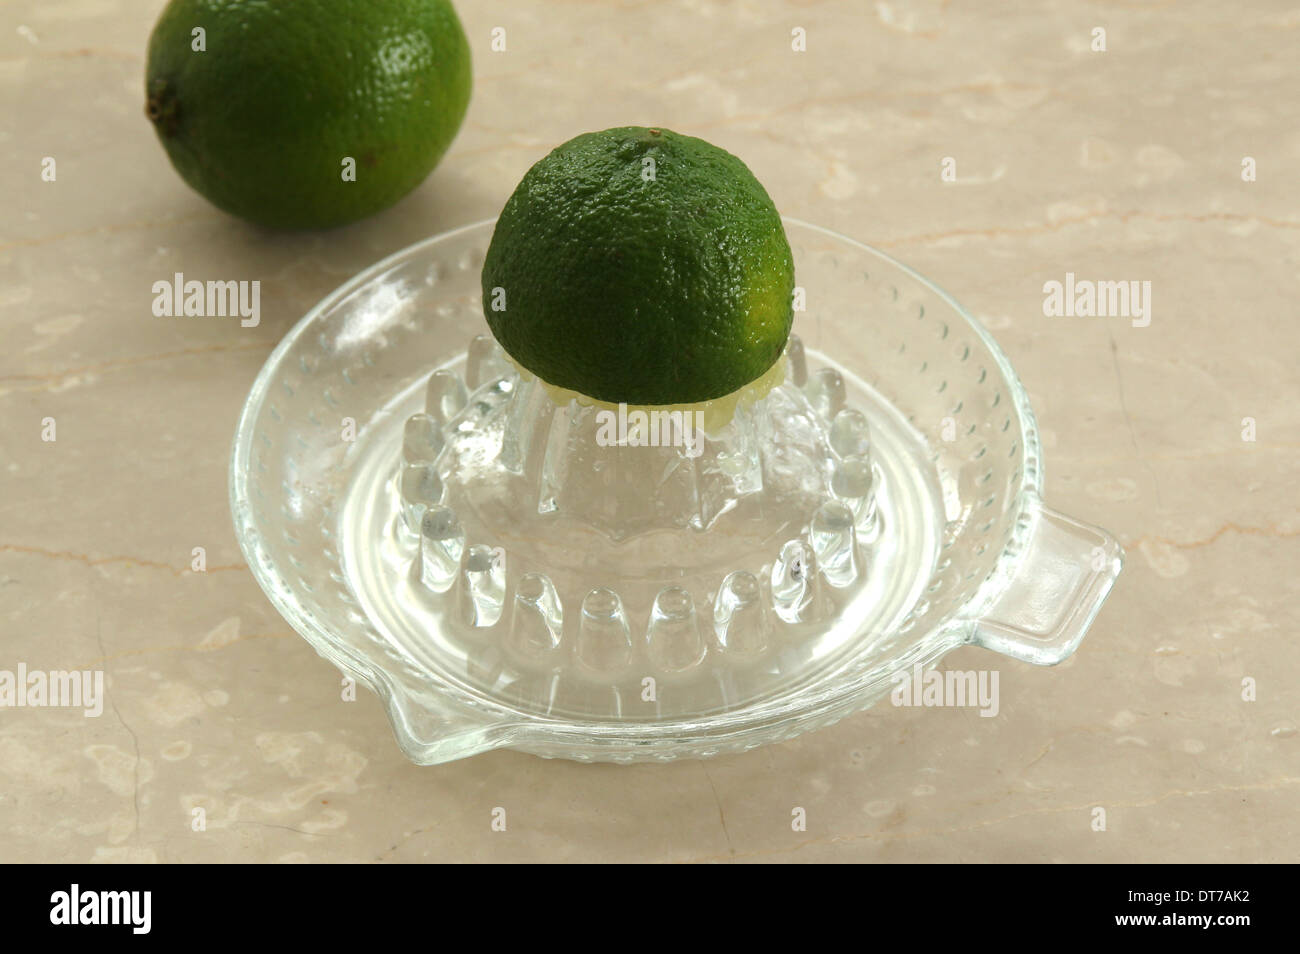 Sammeln von limettensaft oder auf ein Glas saftpresse Entsafter, auf einem cremefarbenen Marmor Hintergrund (4 von 5) Stockfoto